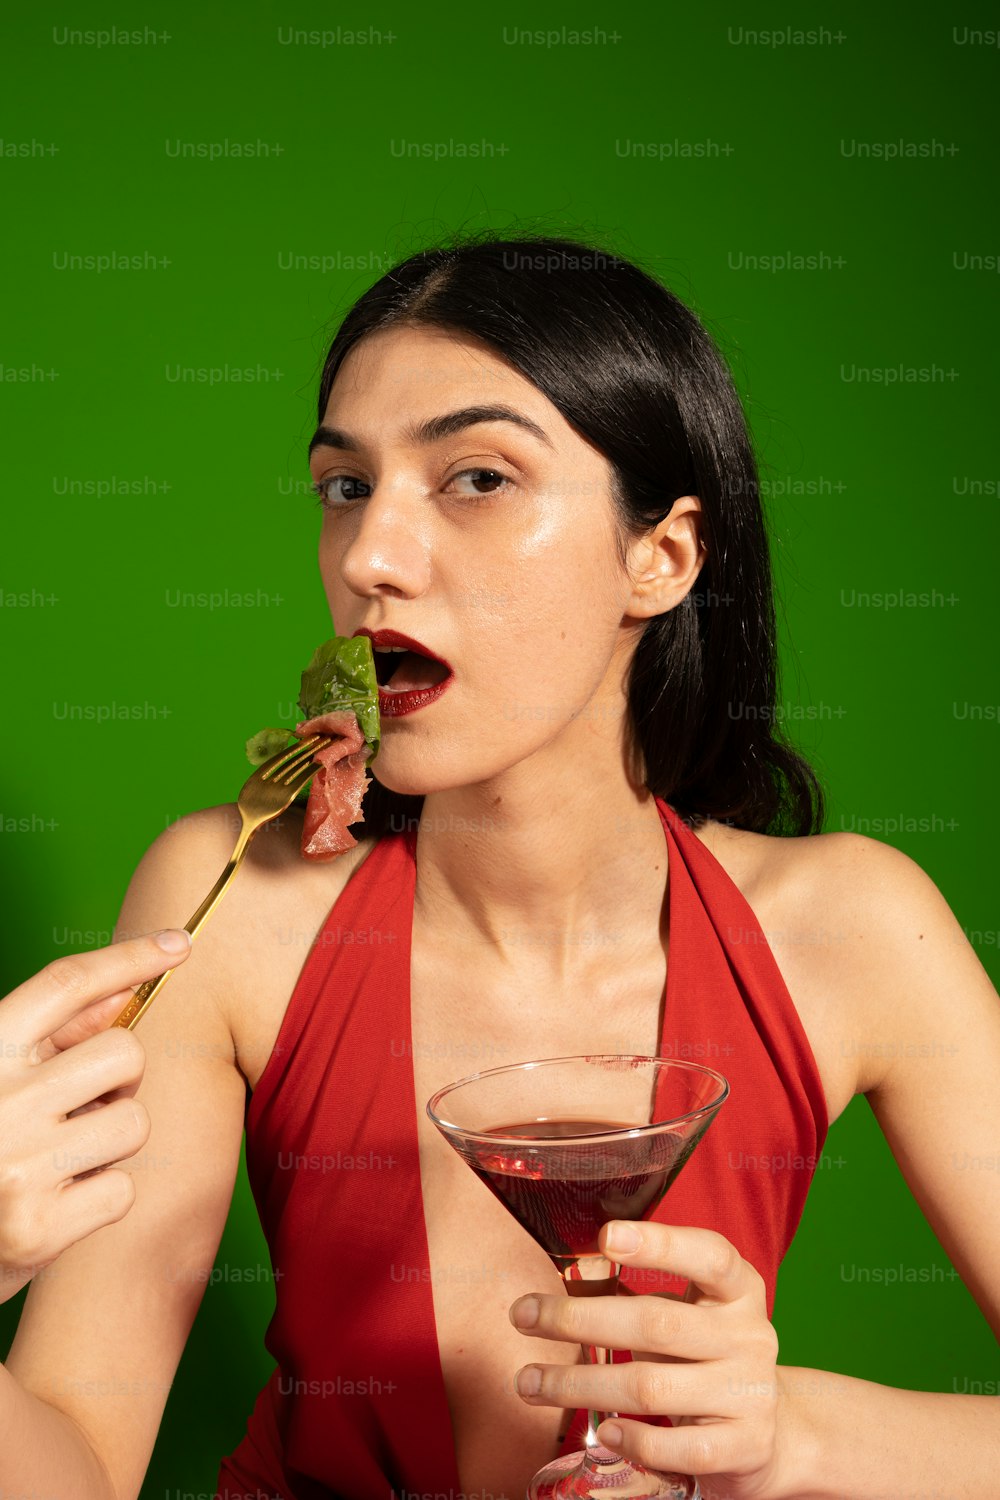 Eine Frau in einem roten Kleid isst ein Stück Essen